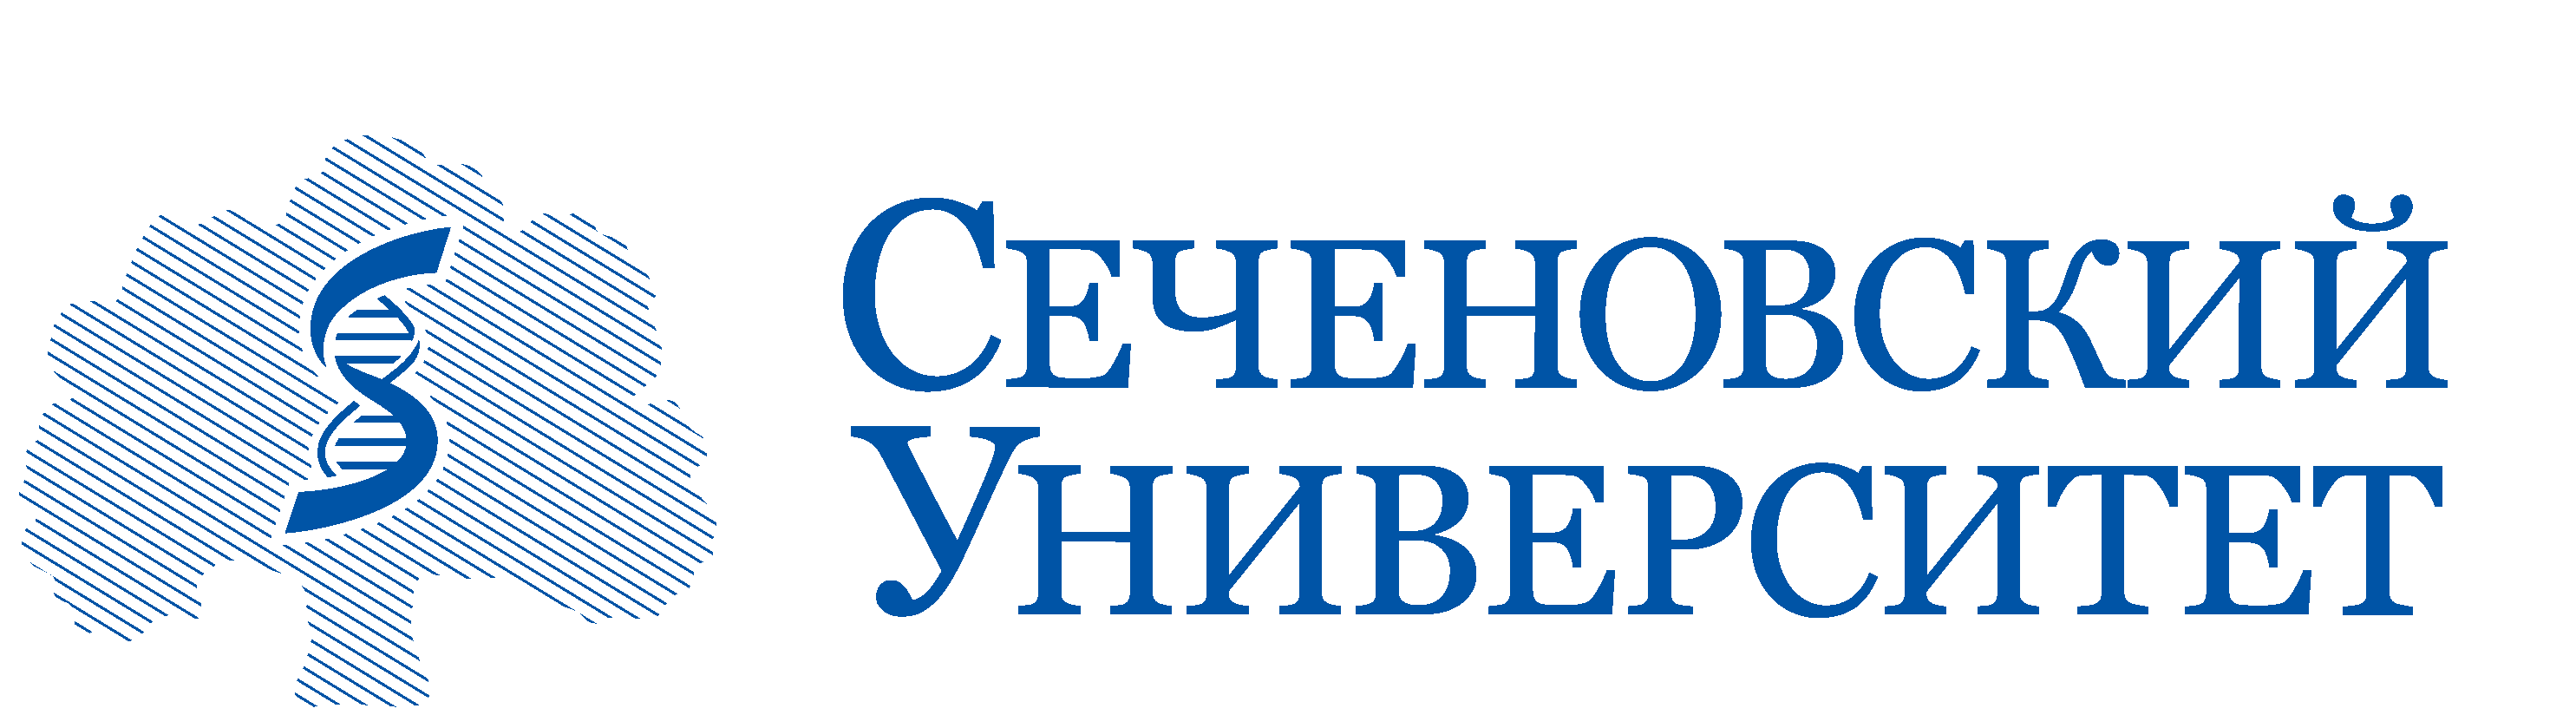 Лого Сеченовский университет